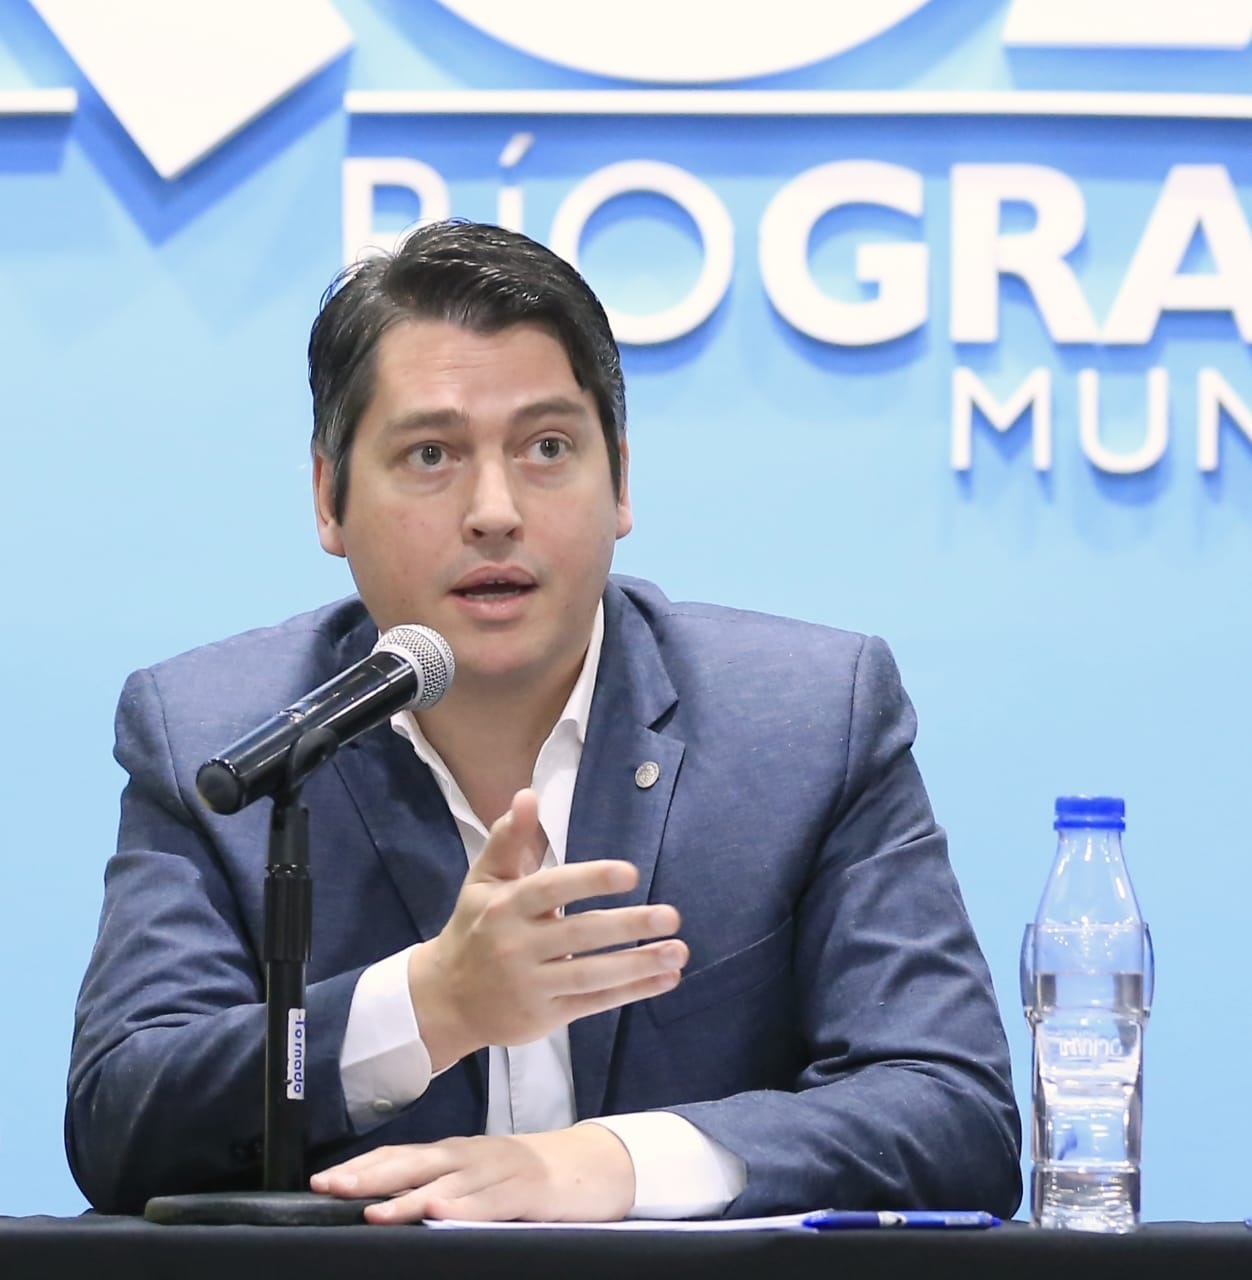 Martín Perez: Preocupa la forma en que se ha planteado el proyecto